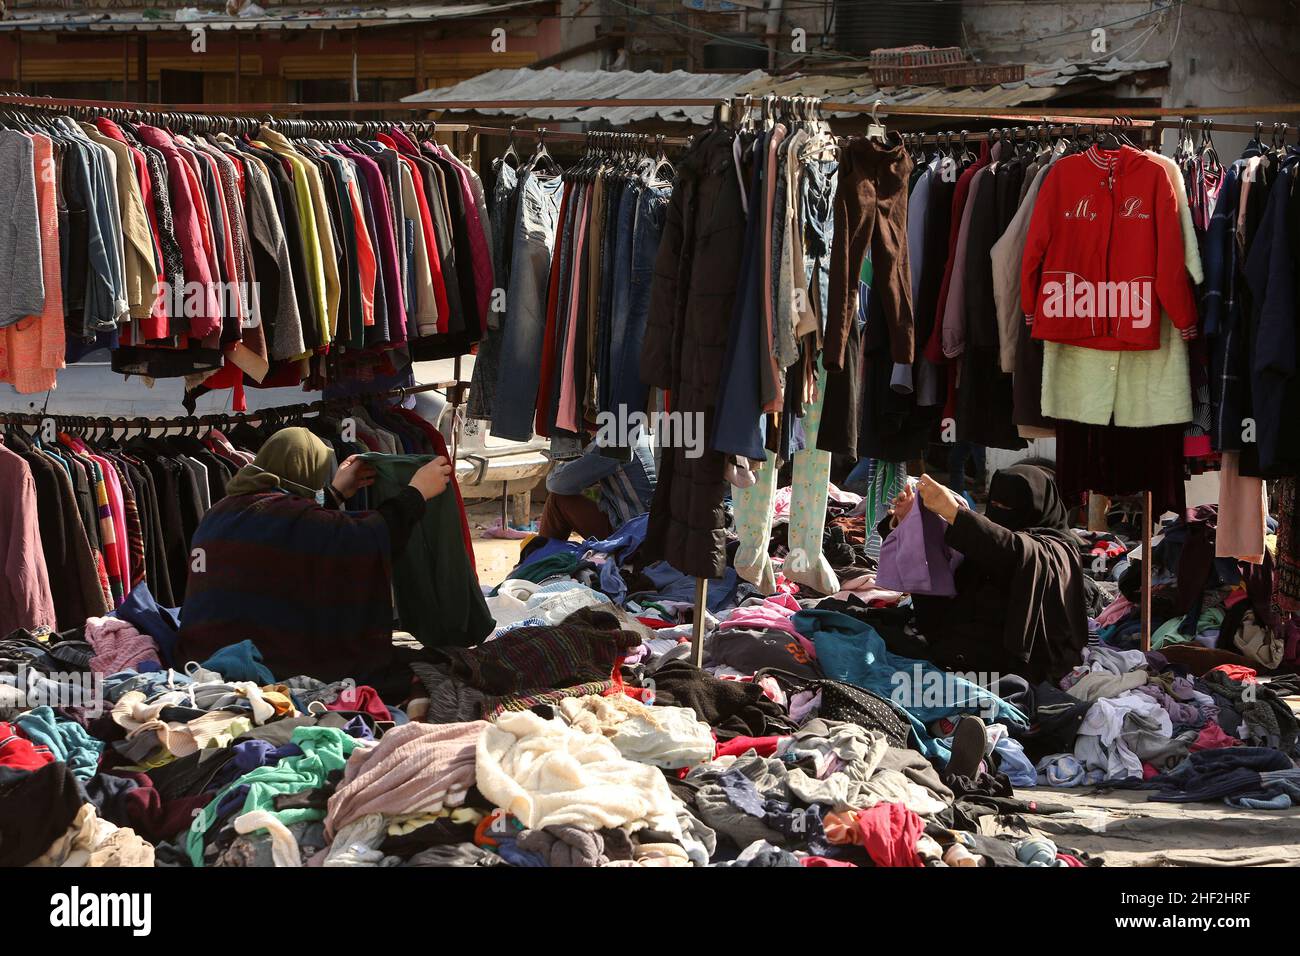 Los palestinos compran en un mercado de segunda mano debido a la alta incidencia de pobreza y desempleo en Rafah, en la franja sur de Gaza, el 13 de enero de 2022. Foto de stock